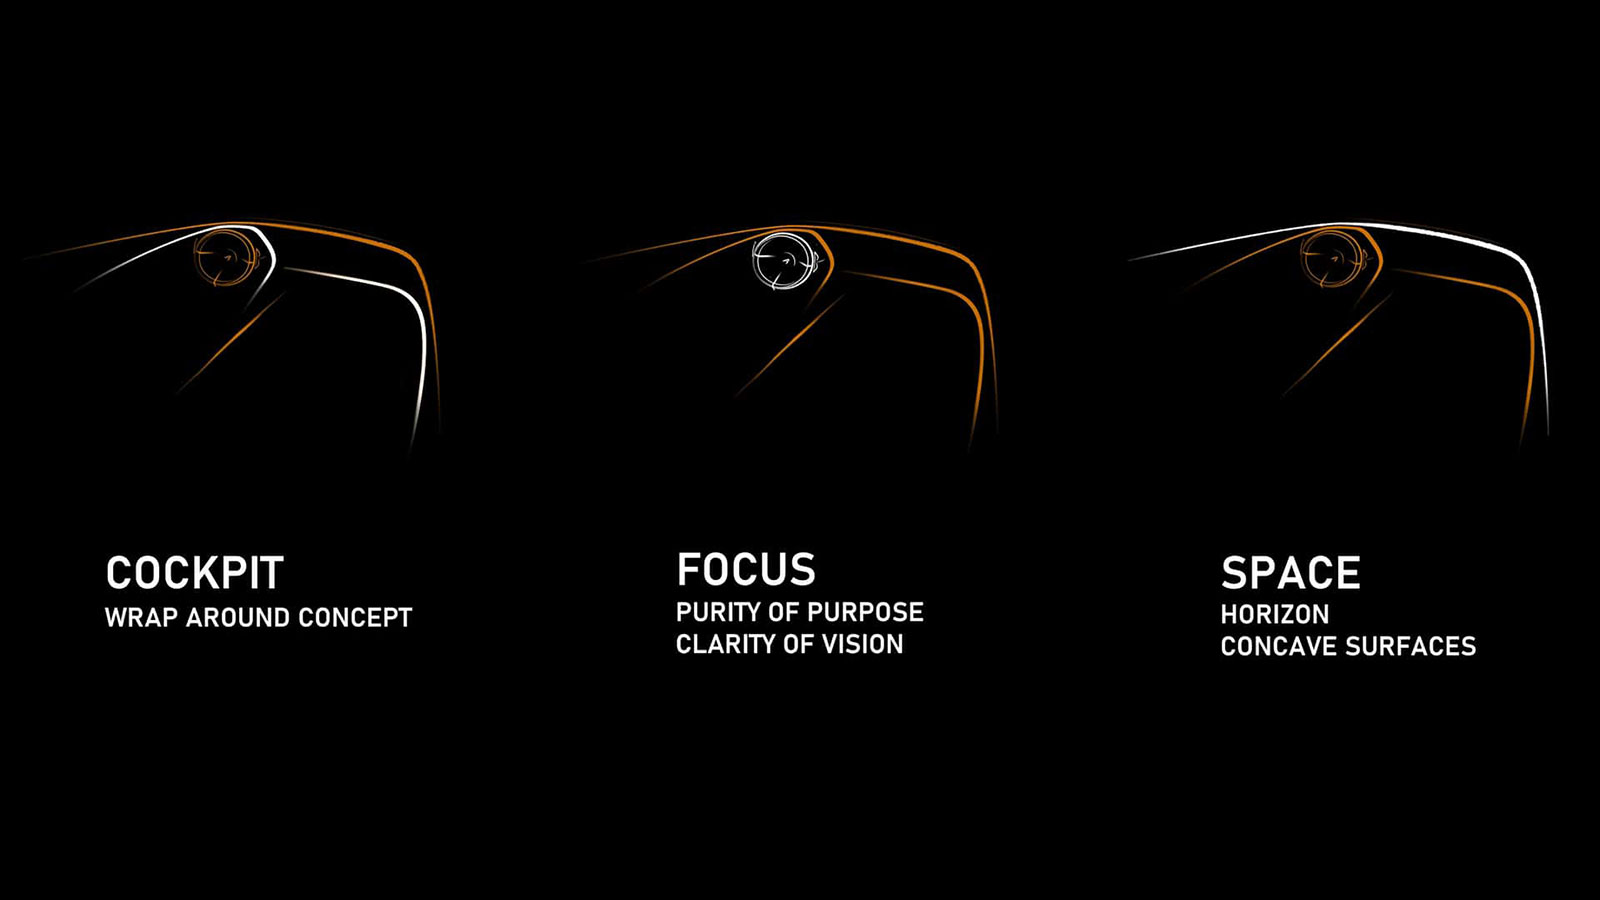 Η F1 θα εμπνέει σχεδιαστικά τις νέες McLaren